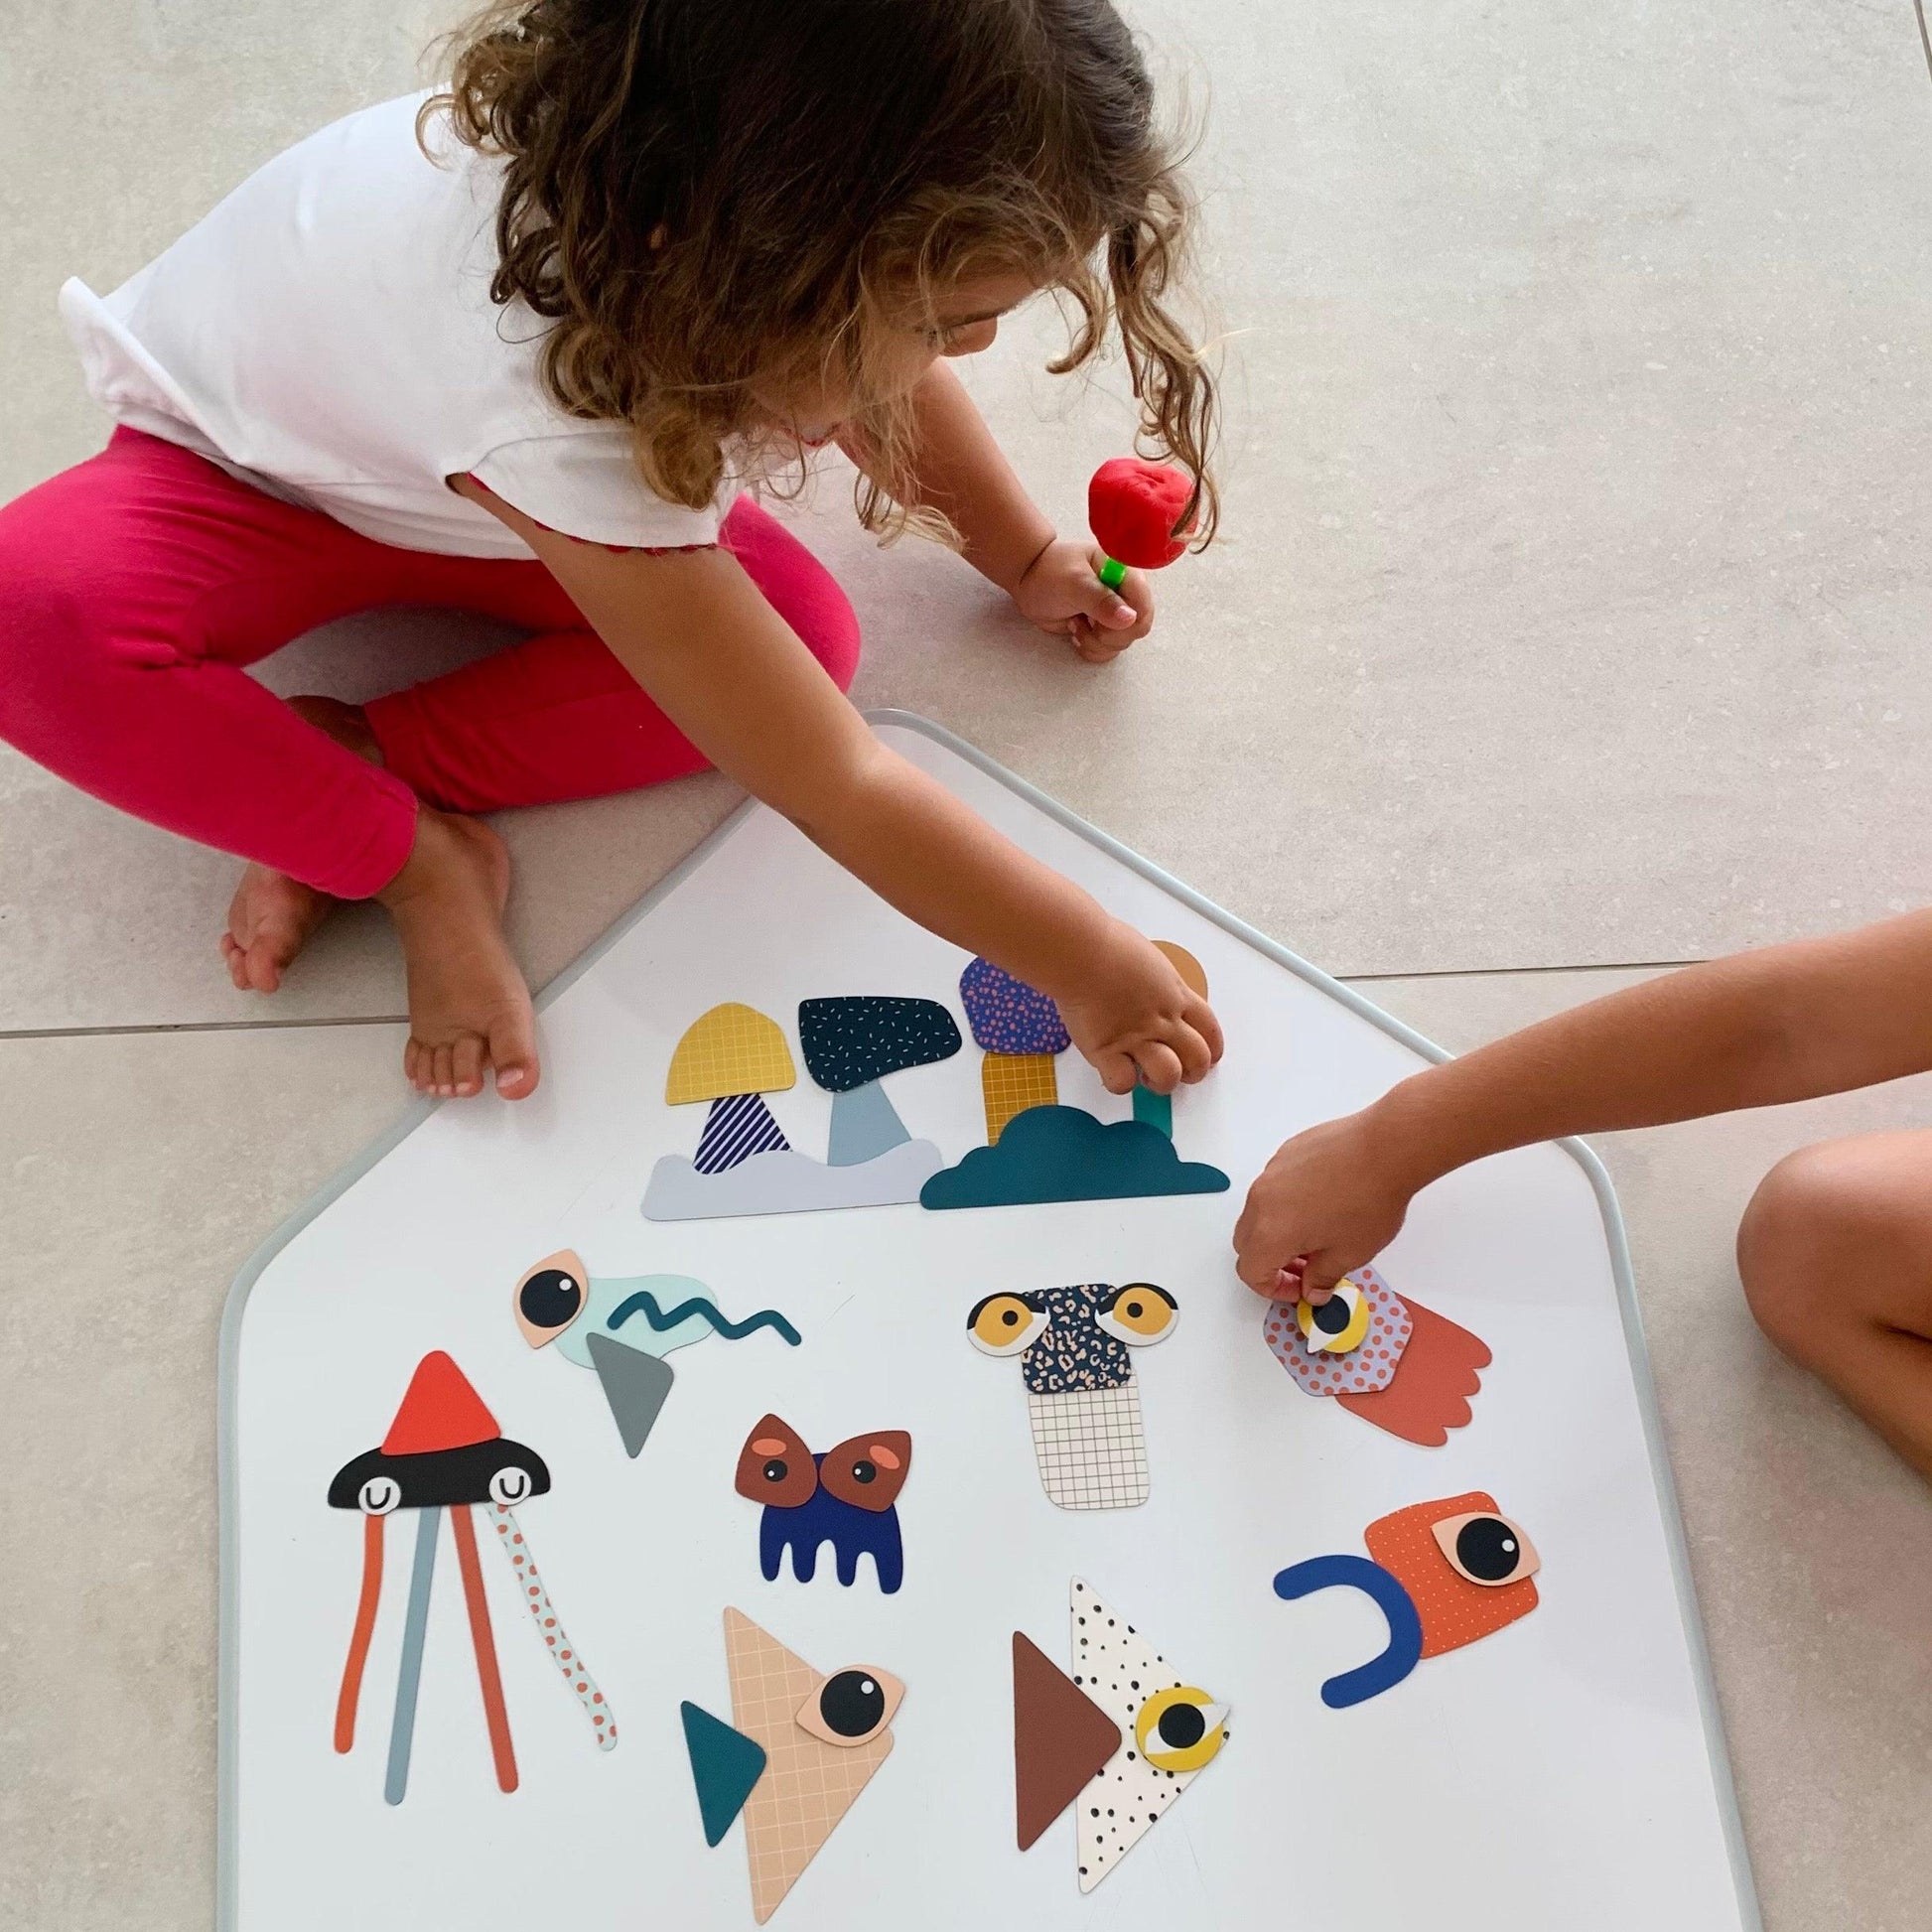 Magnet aimant jeu éducatif magnétique Fabrikabrac formes géométriques rubrique à brac couleurs primaires yeux rigolo motifs pointillé Enfants jouant ardoise bonhomme